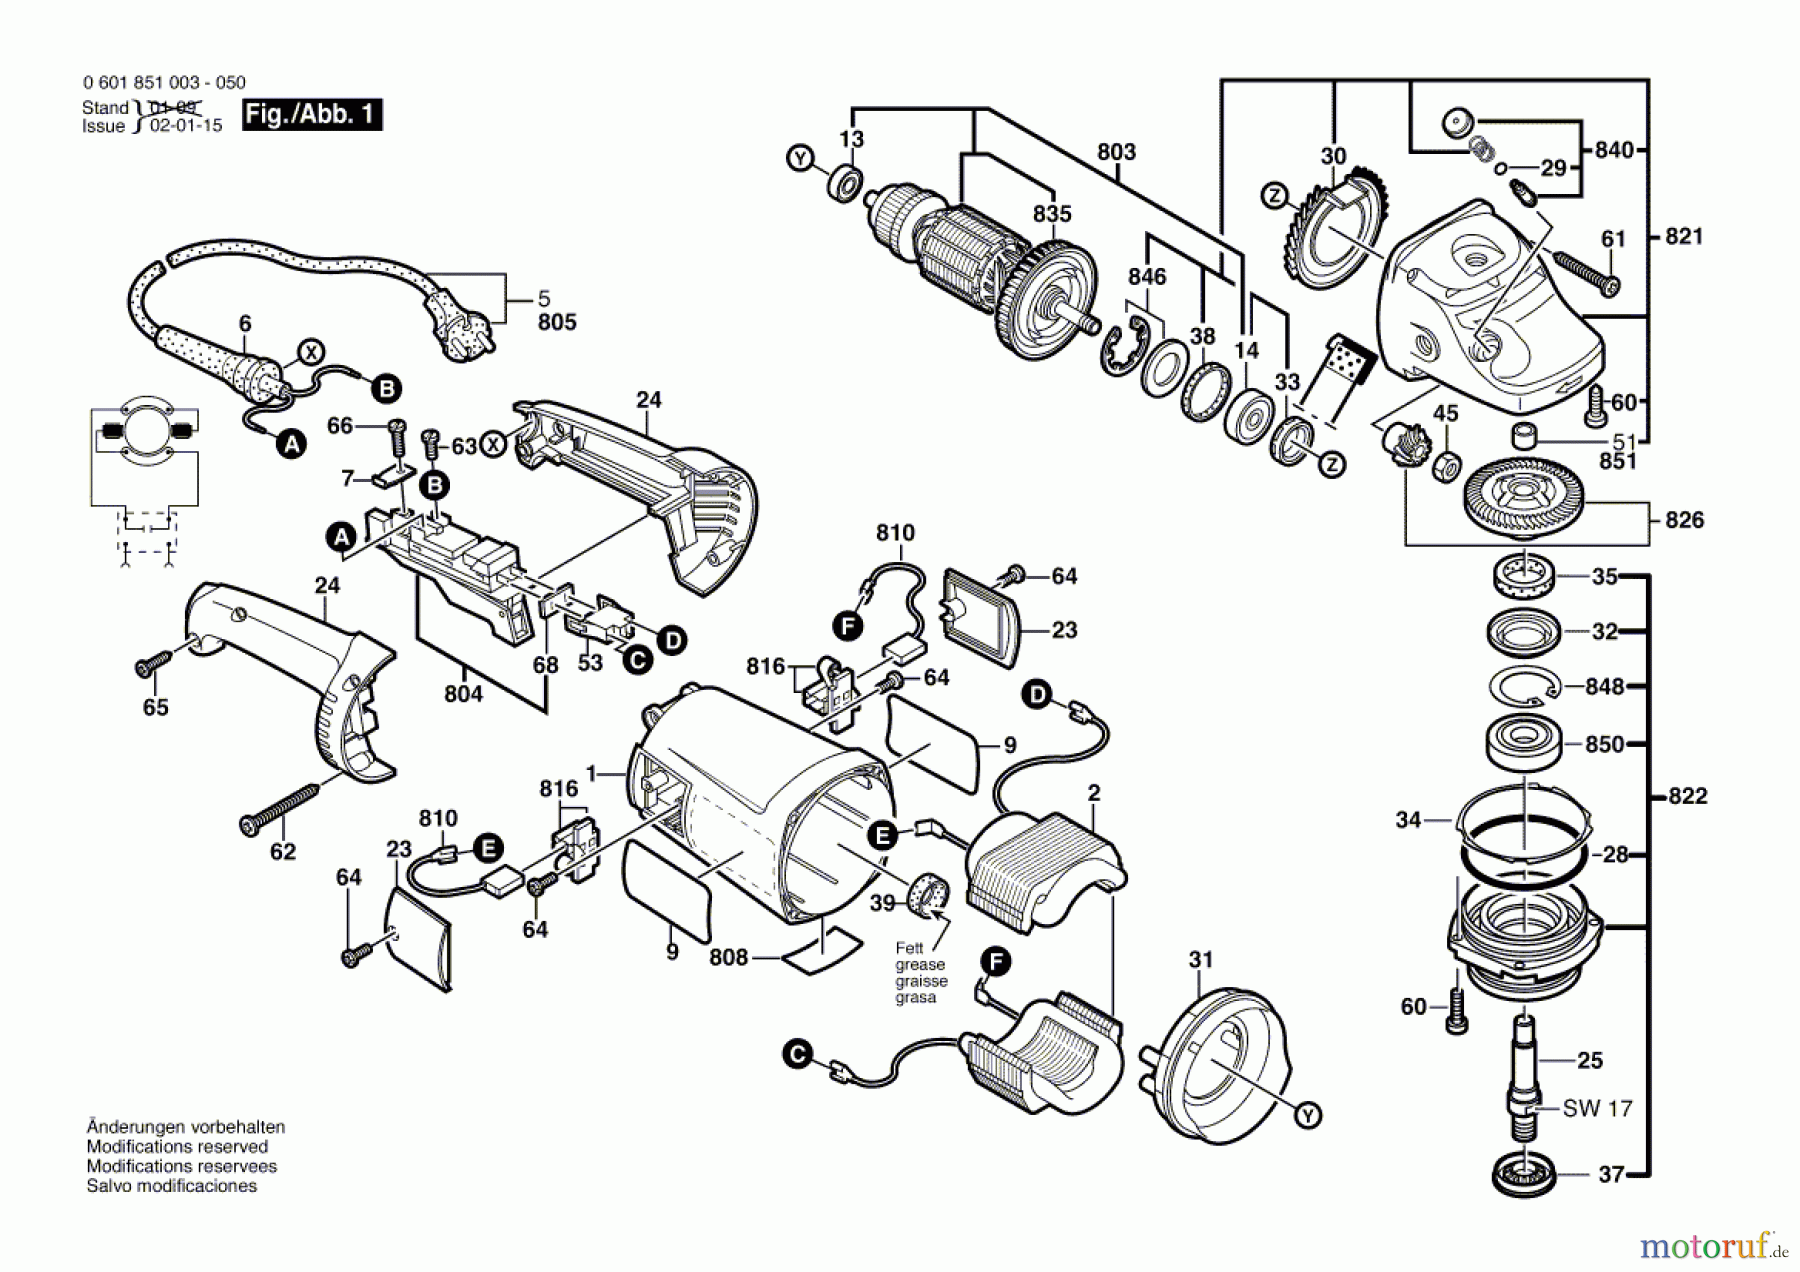  Bosch Werkzeug Winkelschleifer GWS 21-180 H Seite 1